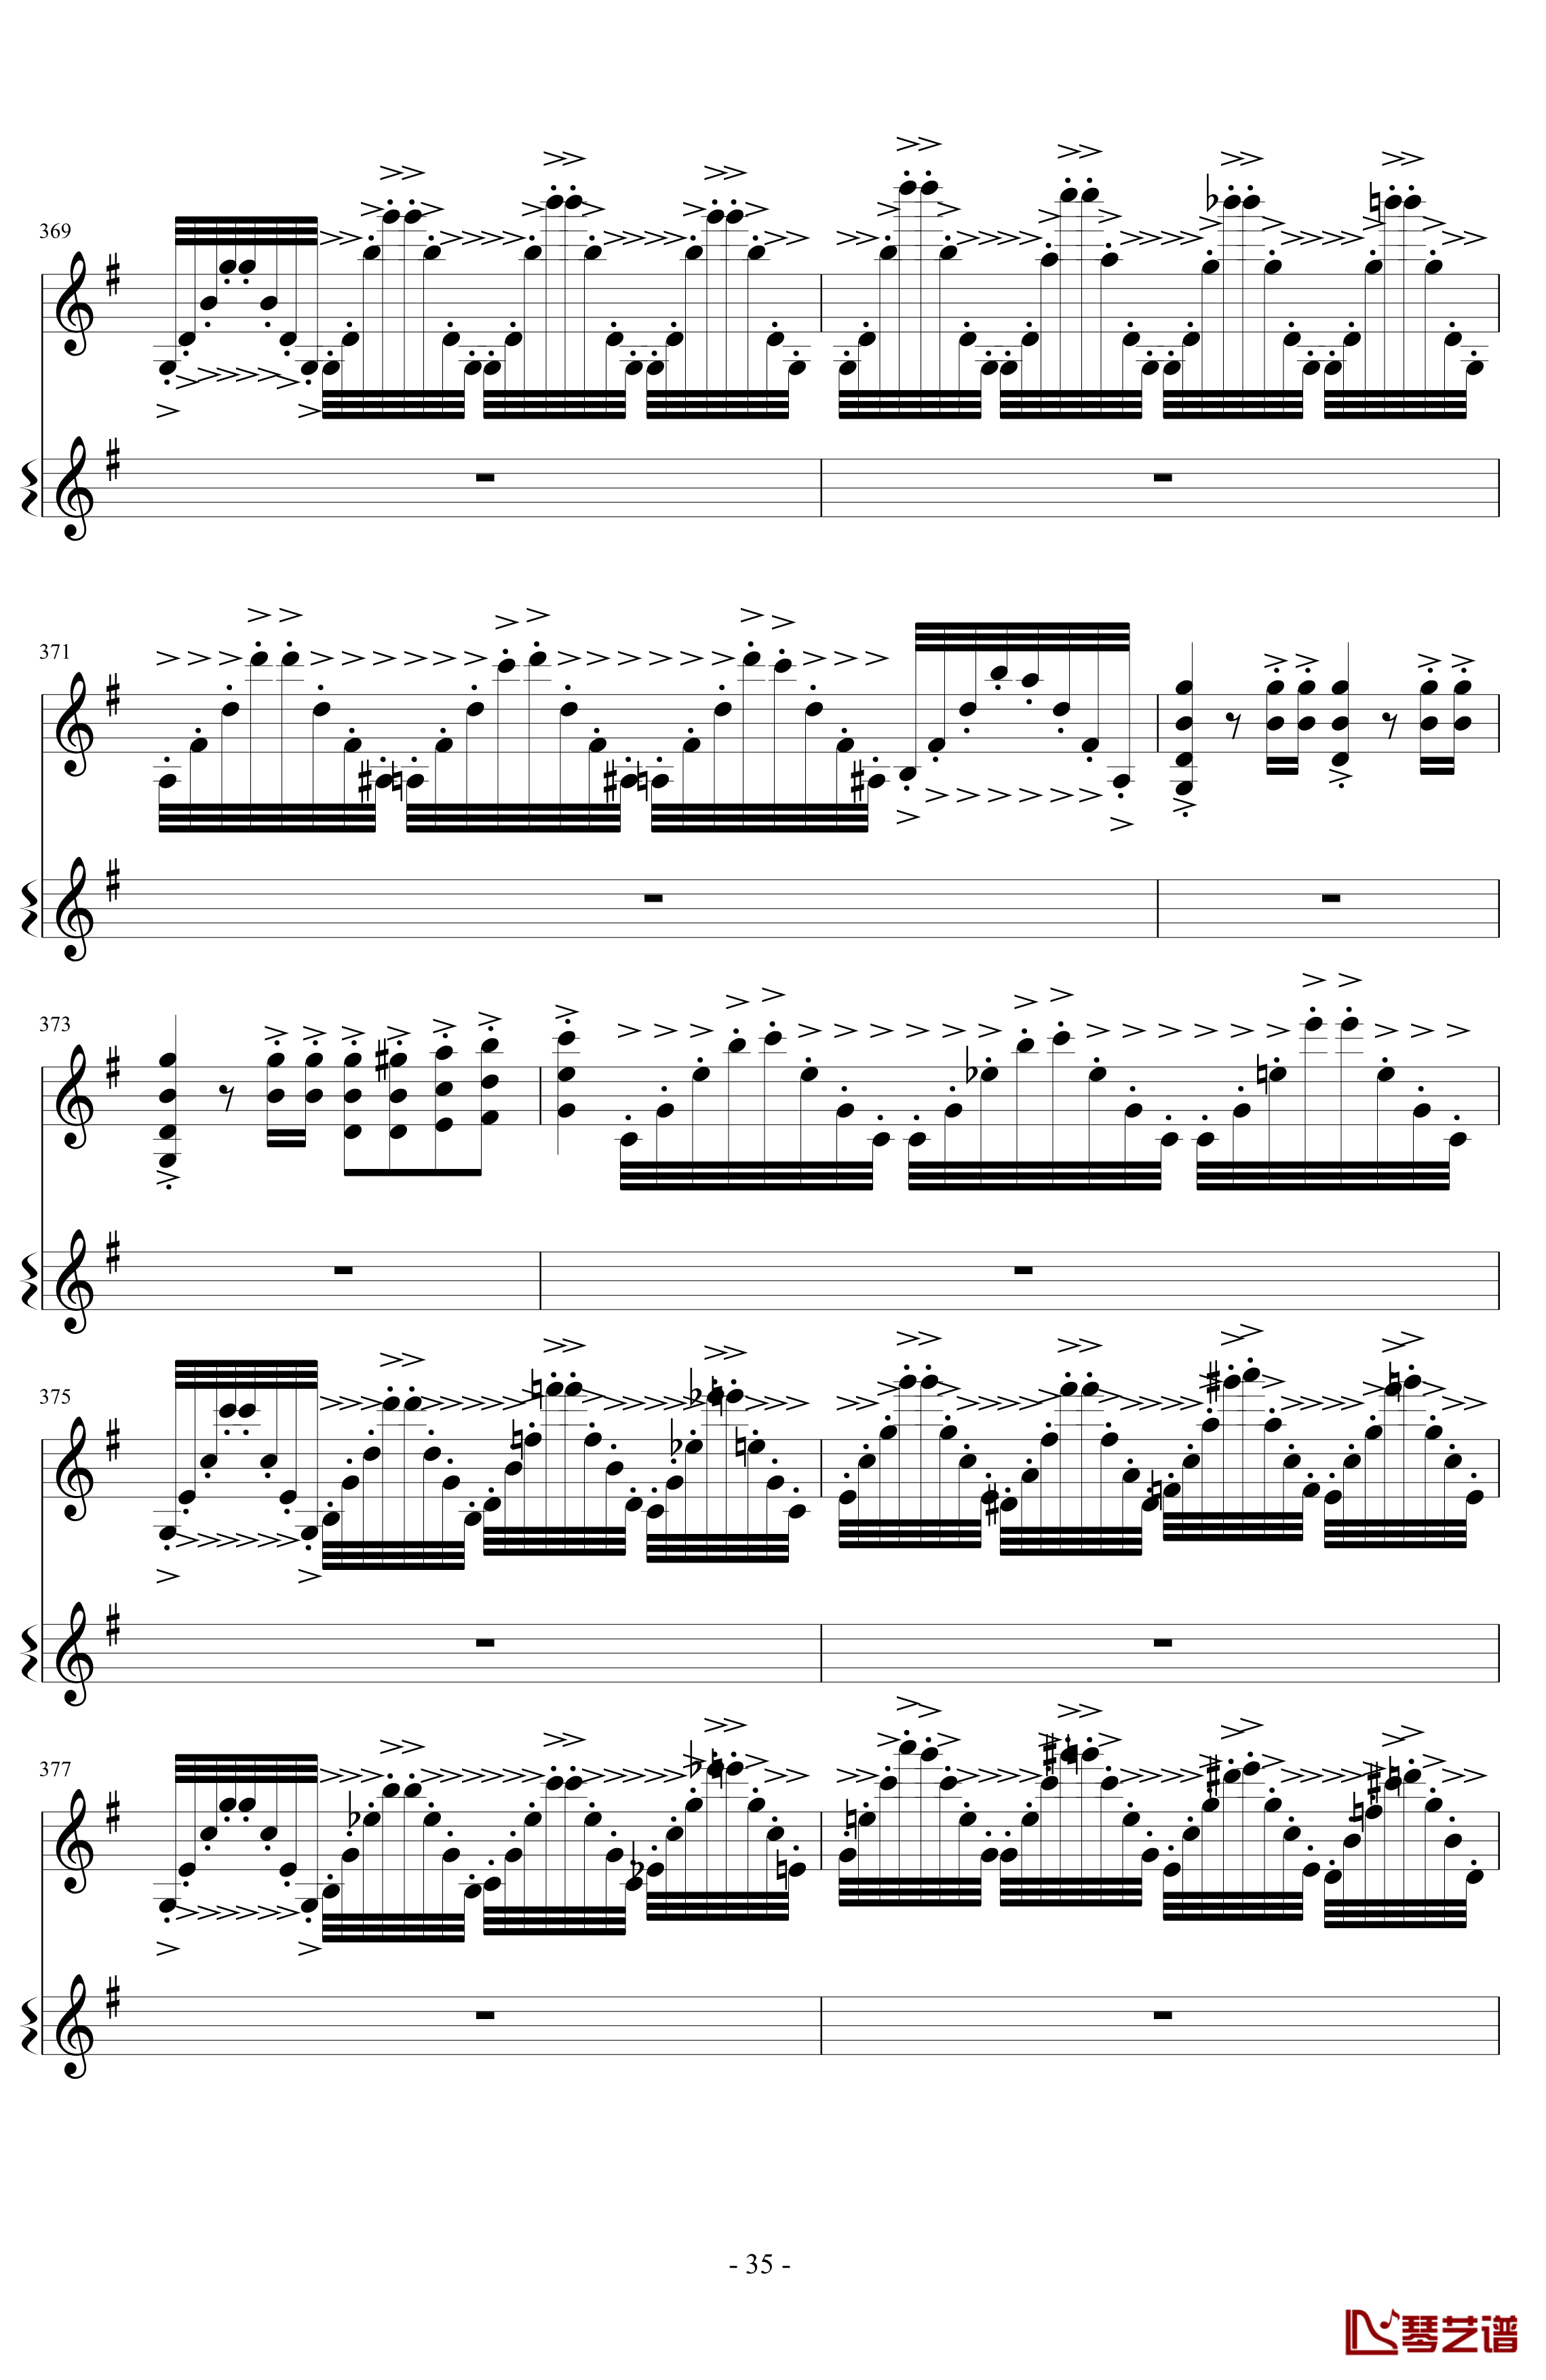 意大利国歌变奏曲钢琴谱-DXF35